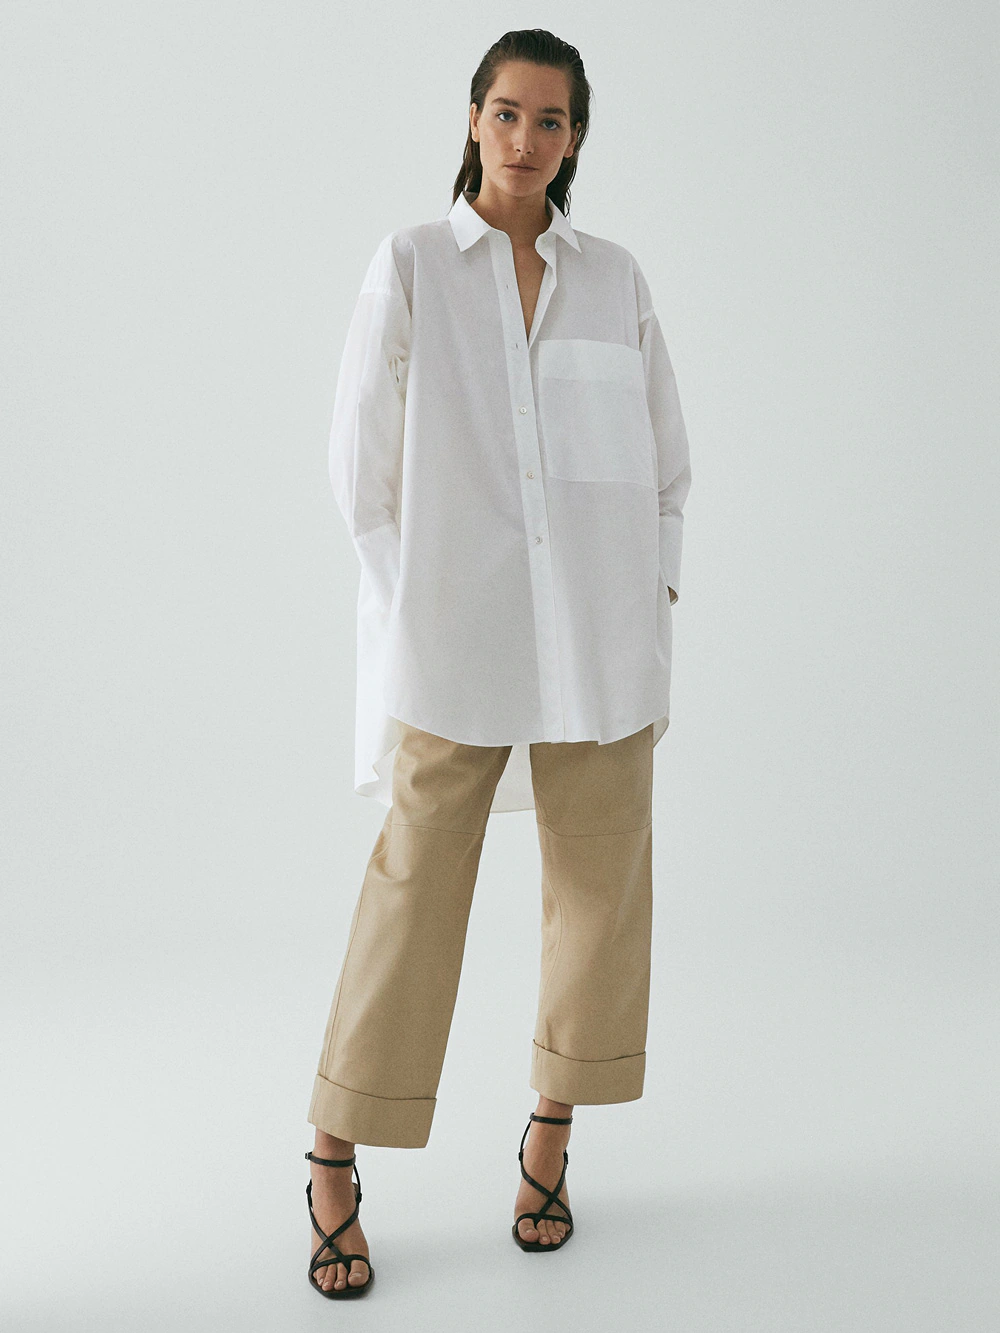 blusas y camisas más elegantes y favorecedoras en las rebajas de Massimo Dutti a mitad de precio | Mujer Hoy